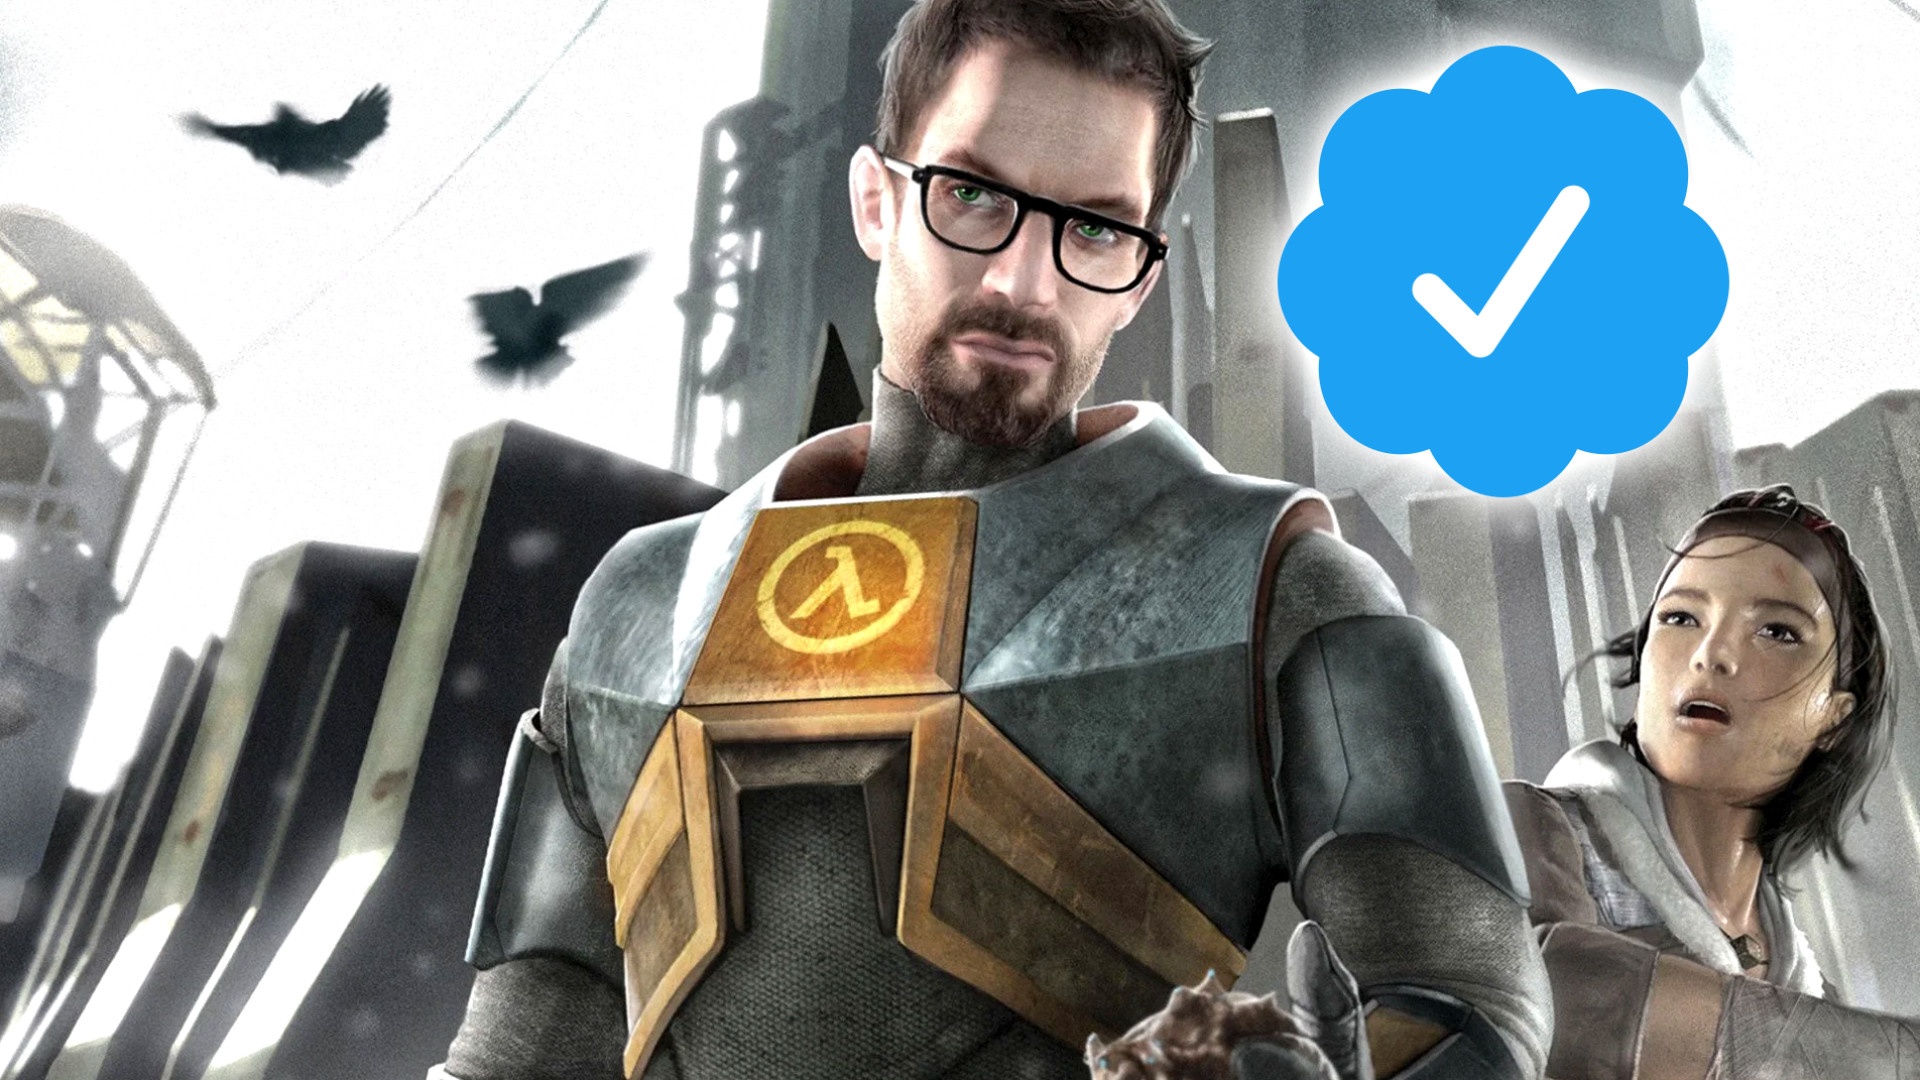 #Der perfide Trick mit dem blauen Haken: Gefälschter Valve-Tweet sorgt für Gesprächsstoff